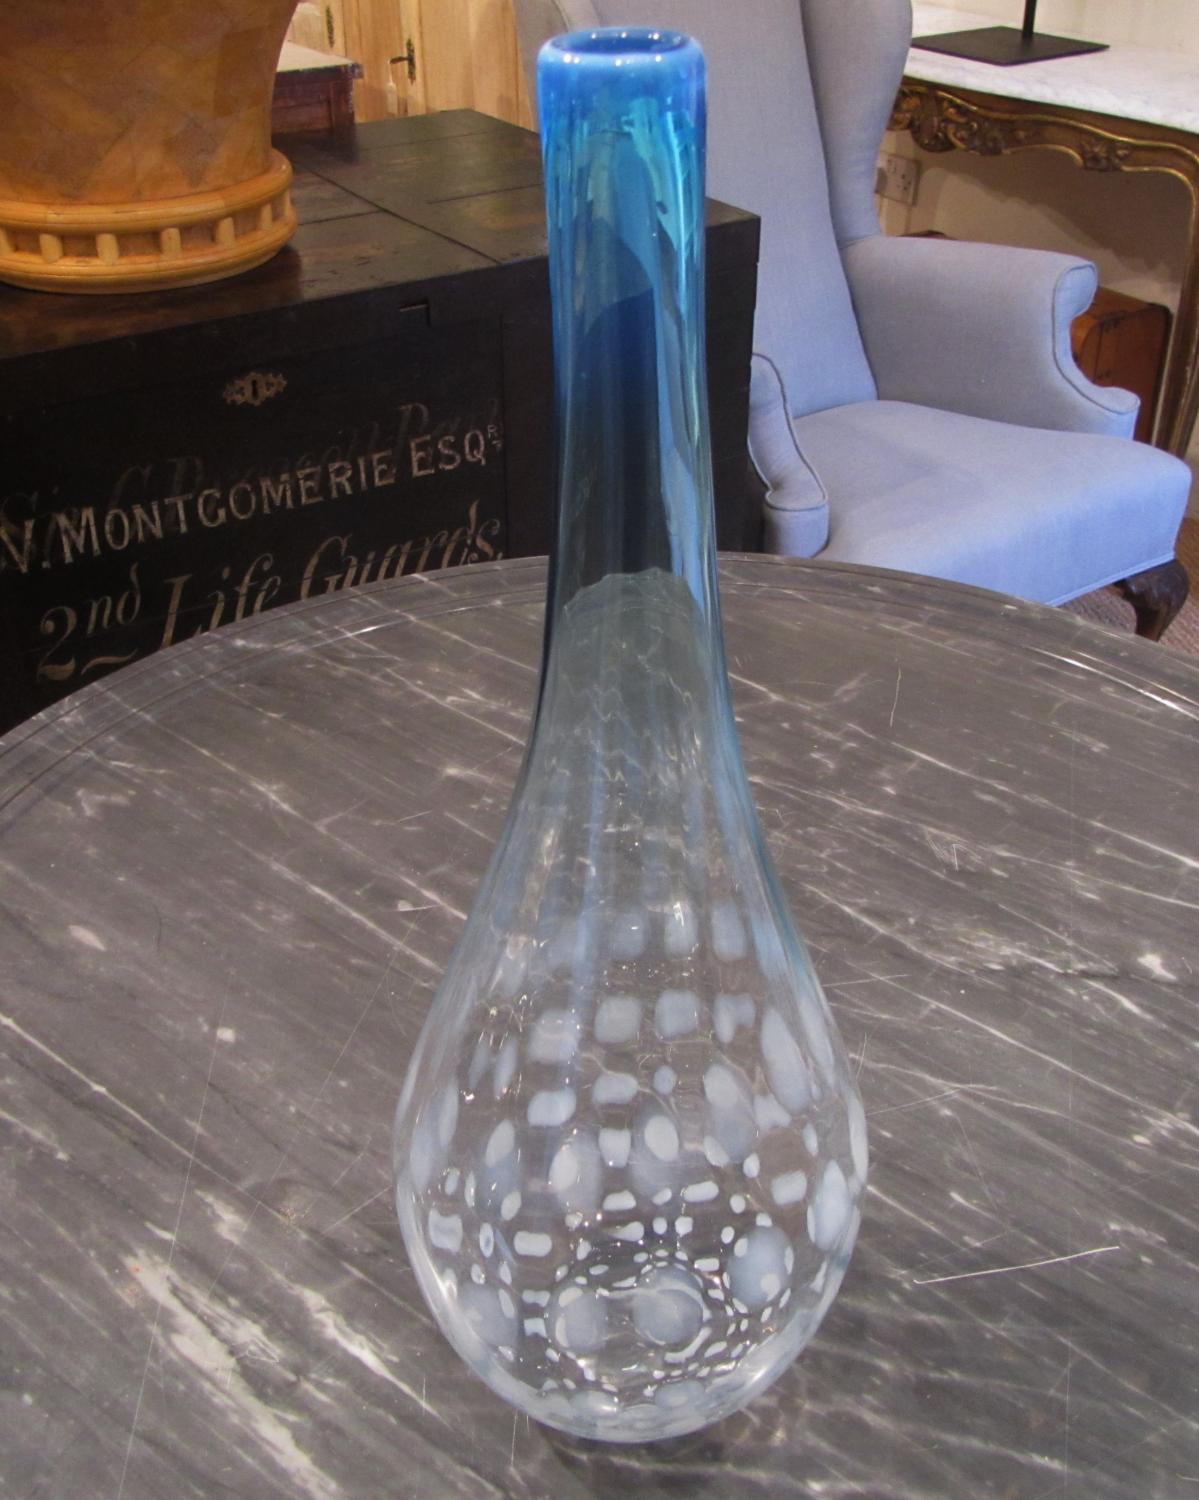 An art glass vase